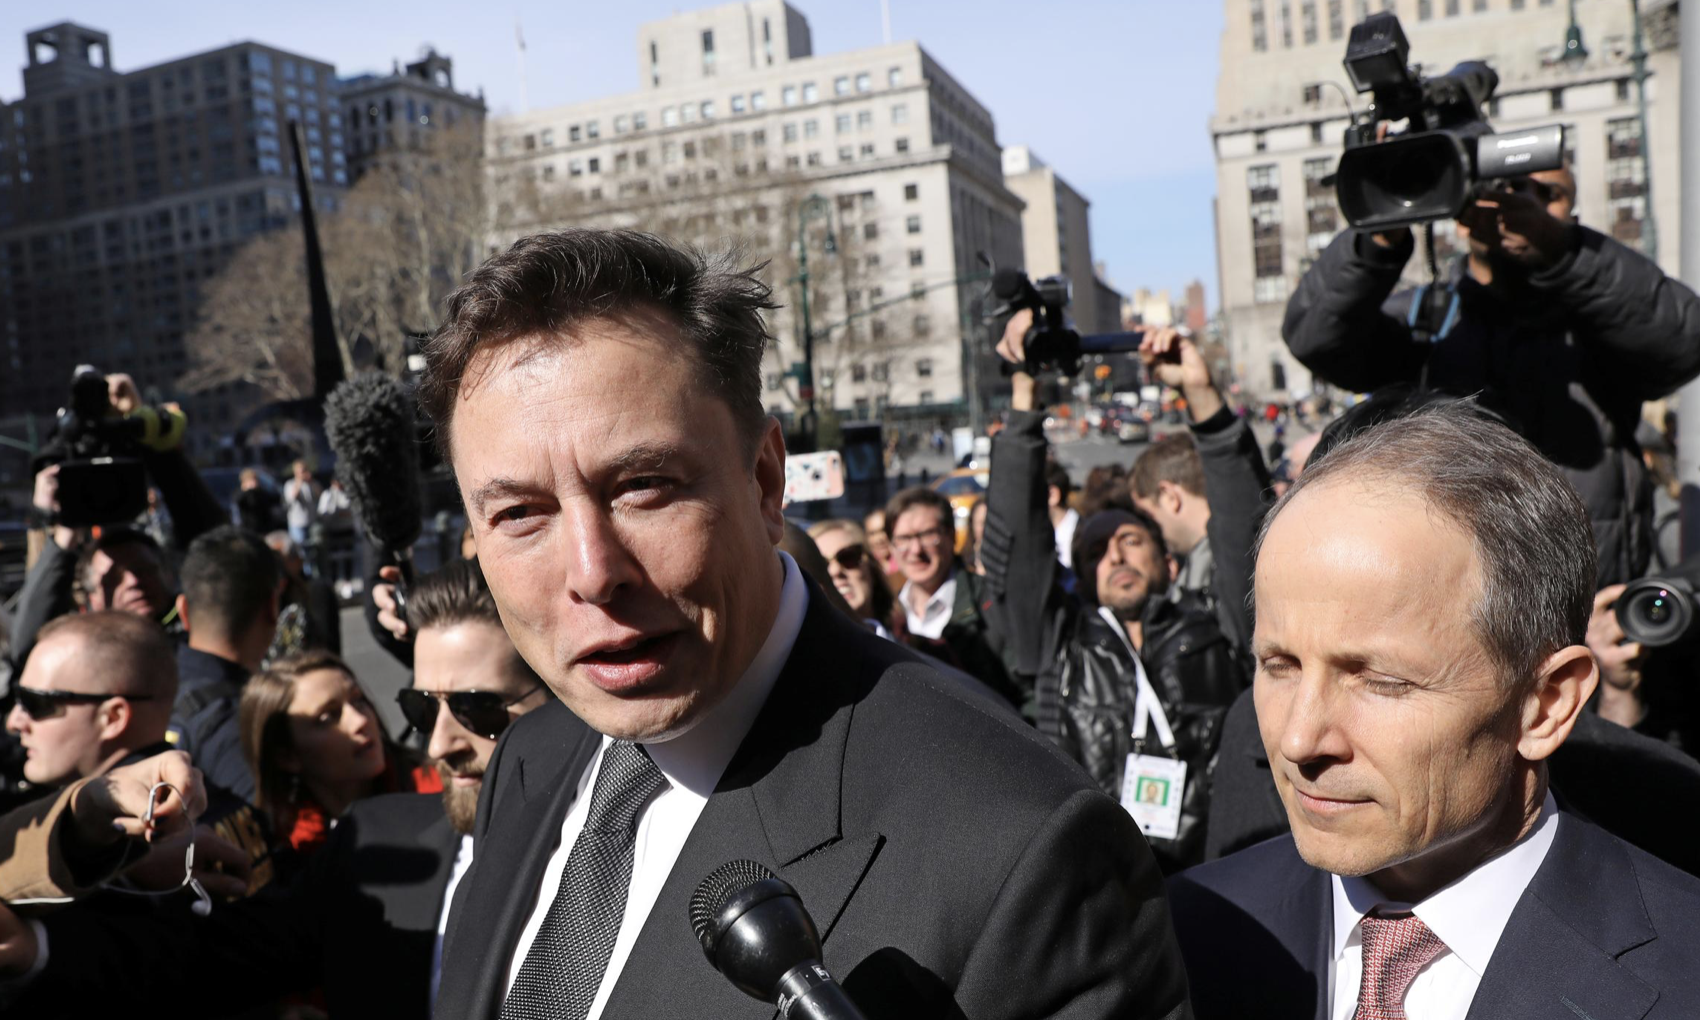 Elon Musk ประกาศออกมาตรการคุมค่าใช้จ่าย หลัง Tesla ยังขาดทุนต่อเนื่อง